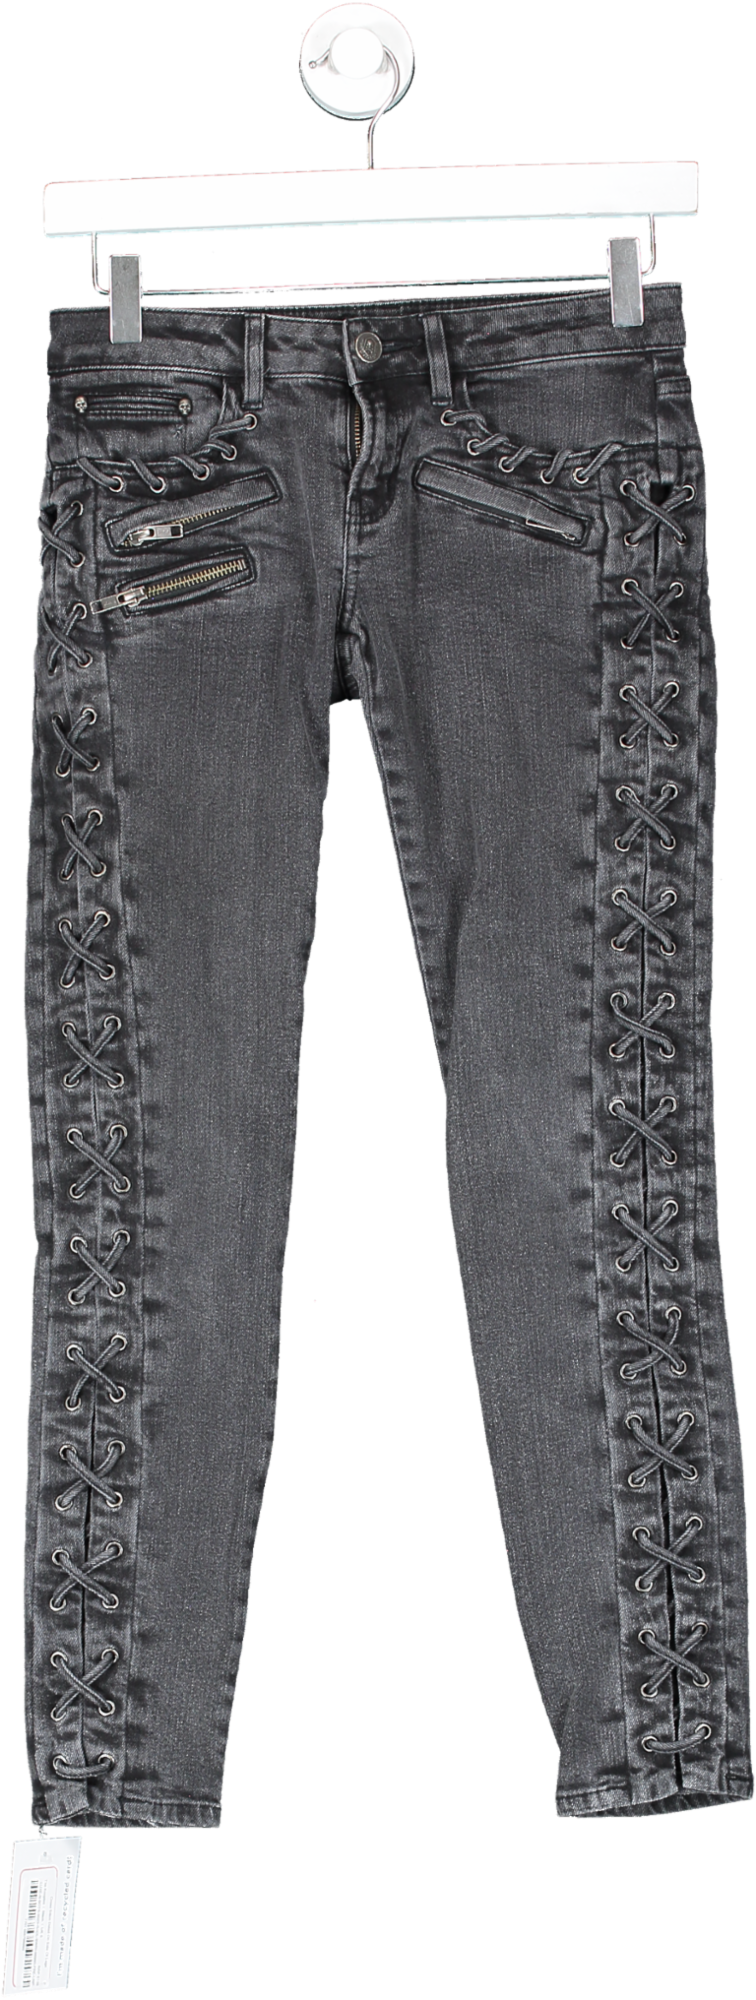 The Kooples Black Cross Stitch Detail On Side Of Legs UK 6